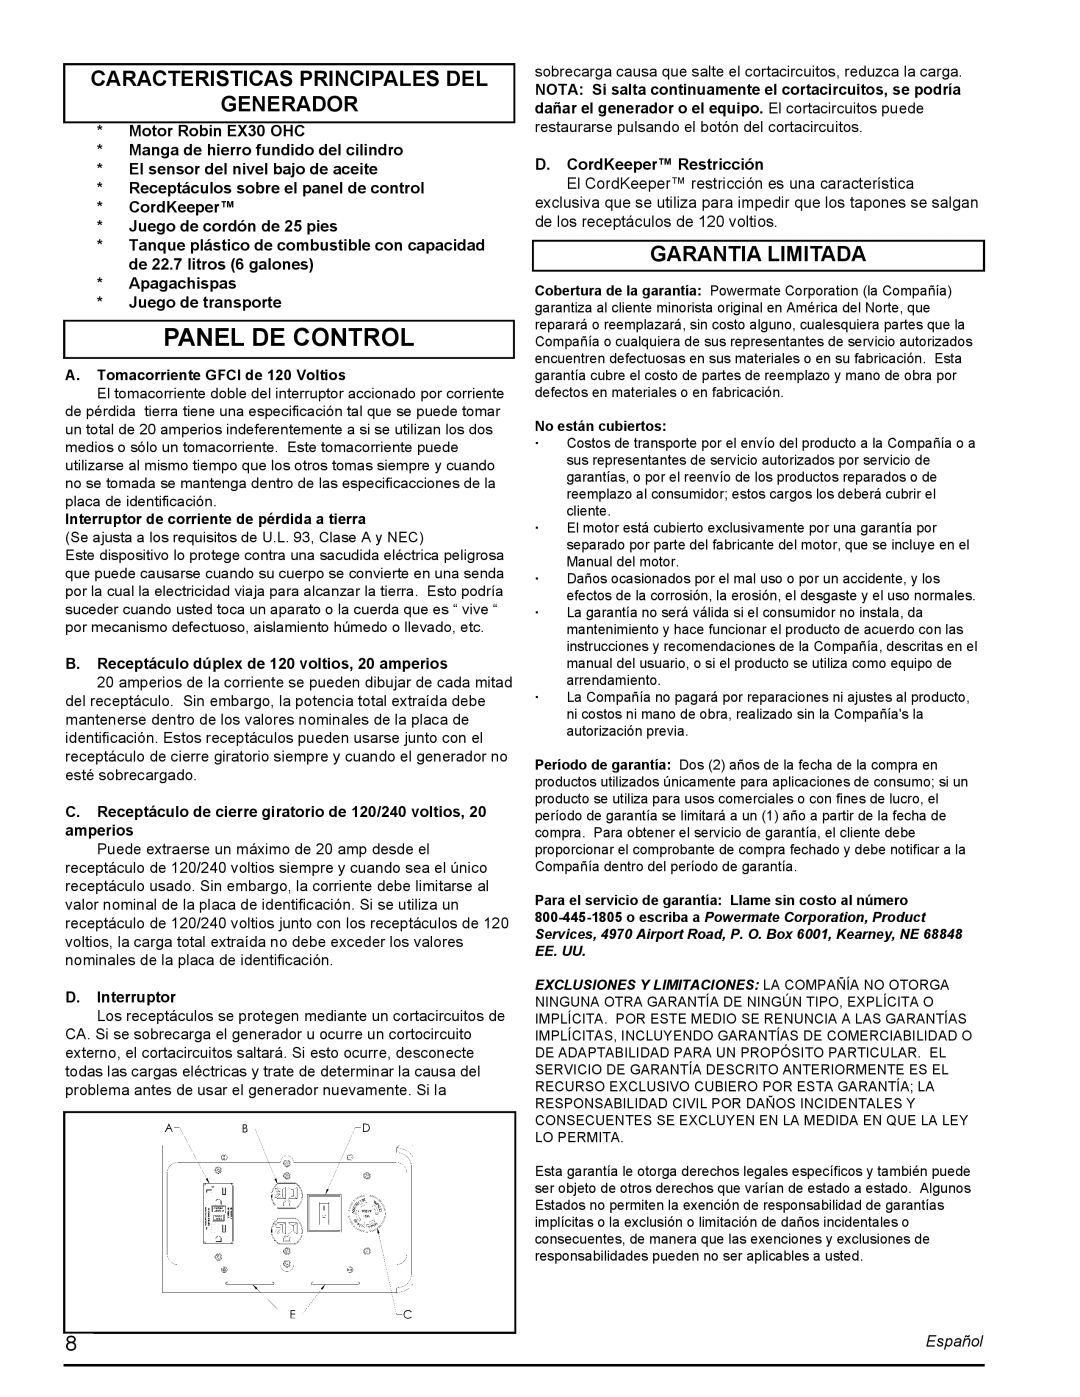 Powermate PMC435001 manual Panel De Control, Caracteristicas Principales Del Generador, Garantia Limitada, Español 